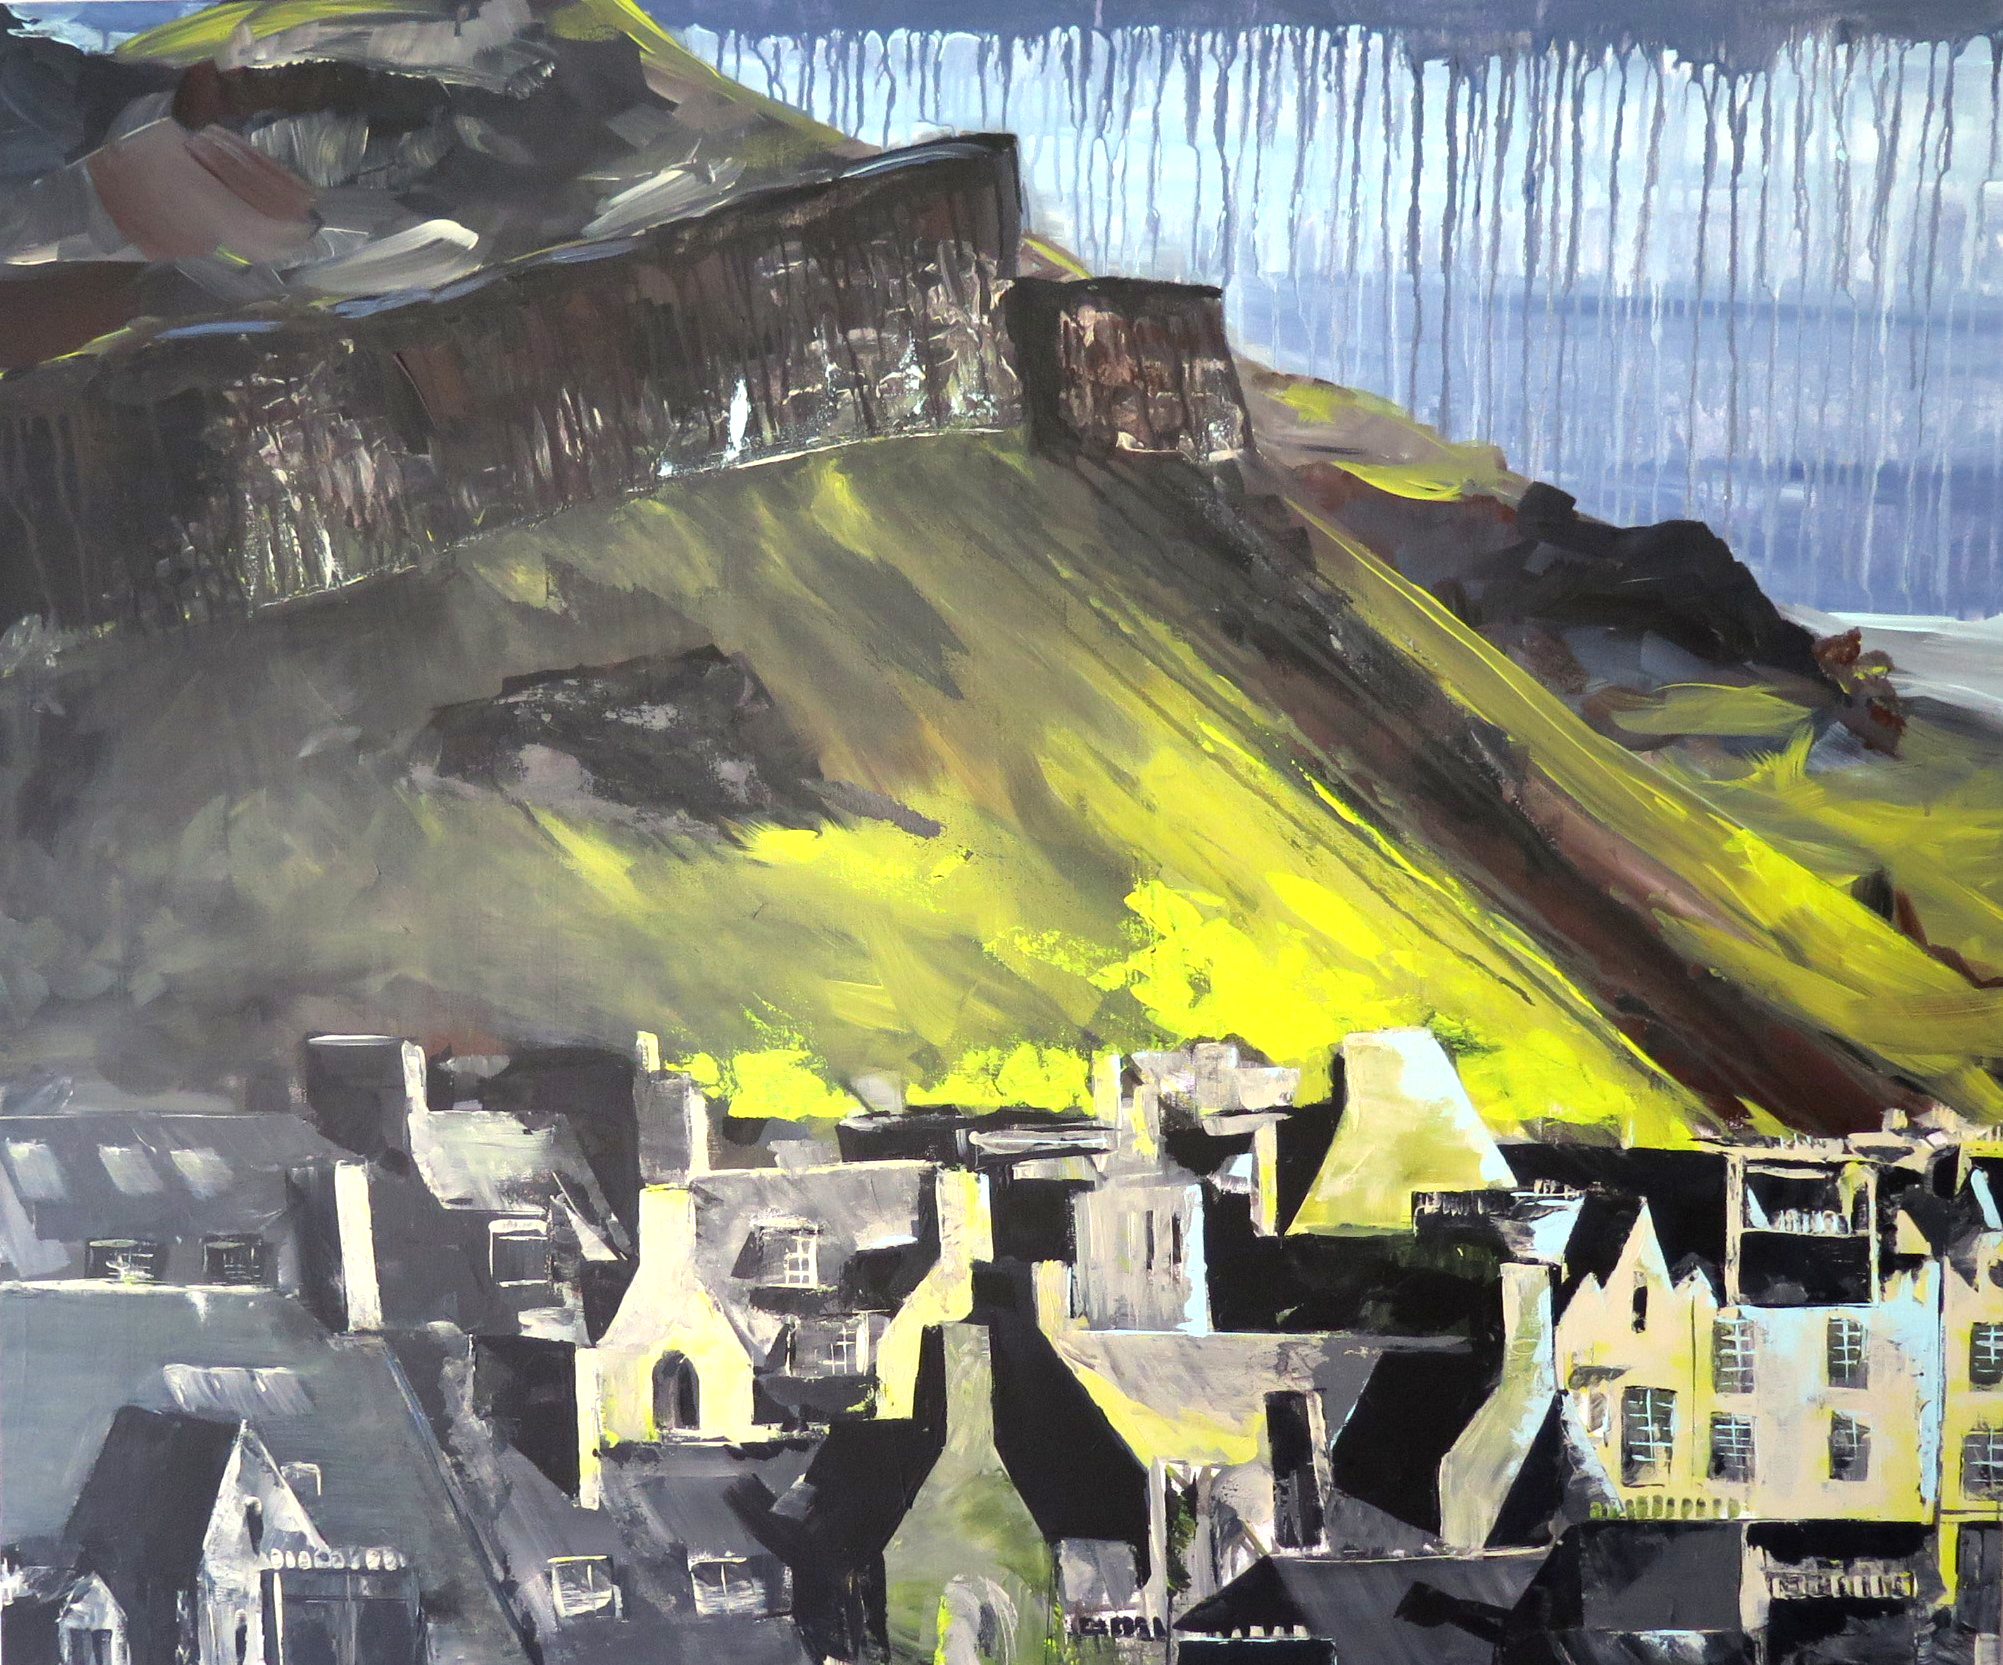 Ein Acrylgemälde von Arthur's Seat in Edinburgh mit Häusern im Vordergrund